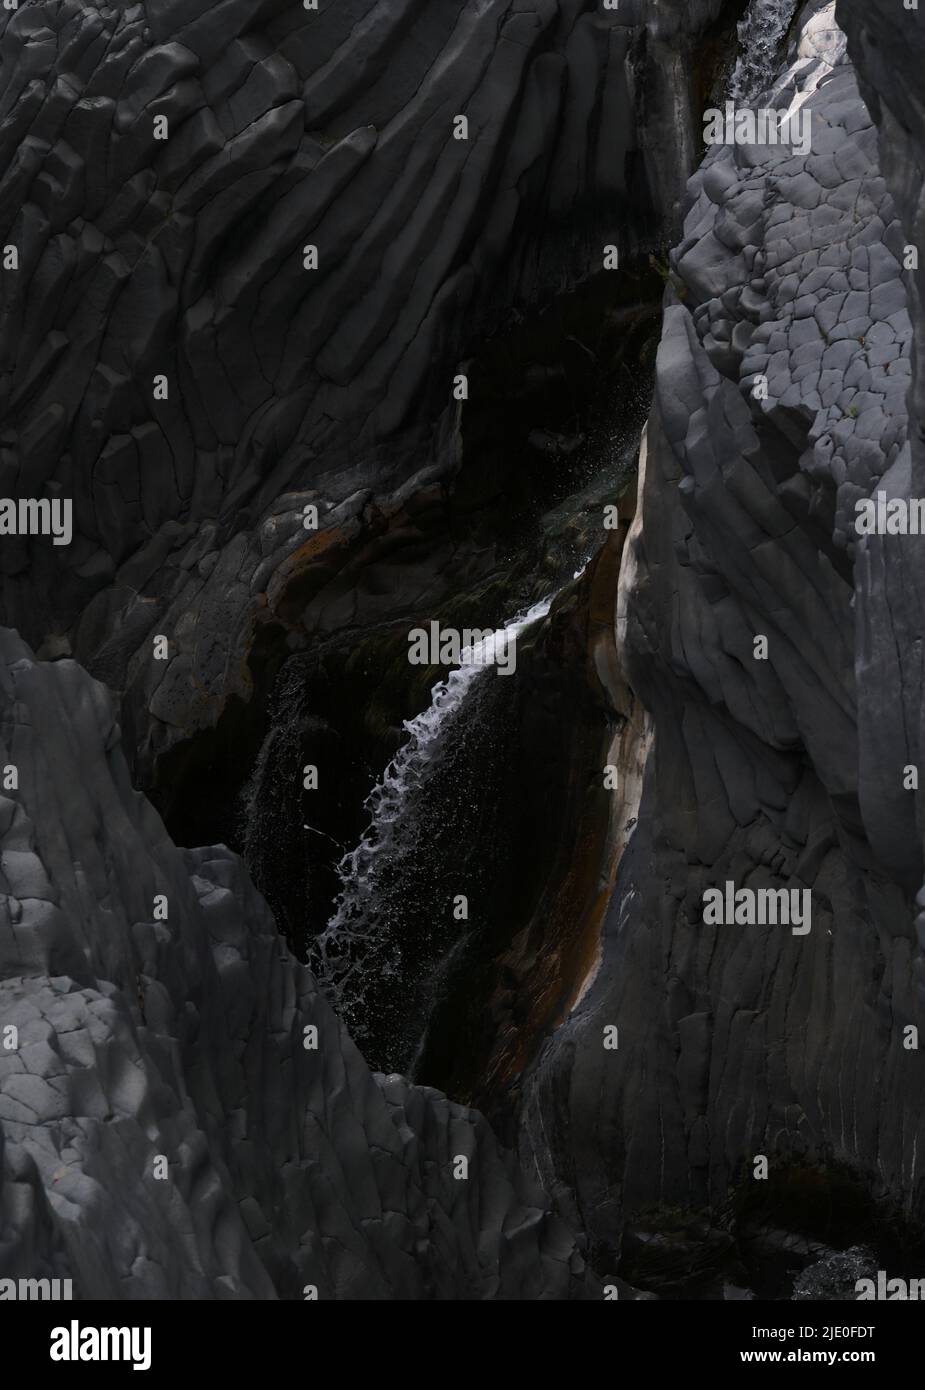 Il Tumulto di Vulcano, volcanic tumult, lava rock in the river park Gole dell' Alcantara, Alcantara Gorge, Sicily, Italy, Europe Stock Photo